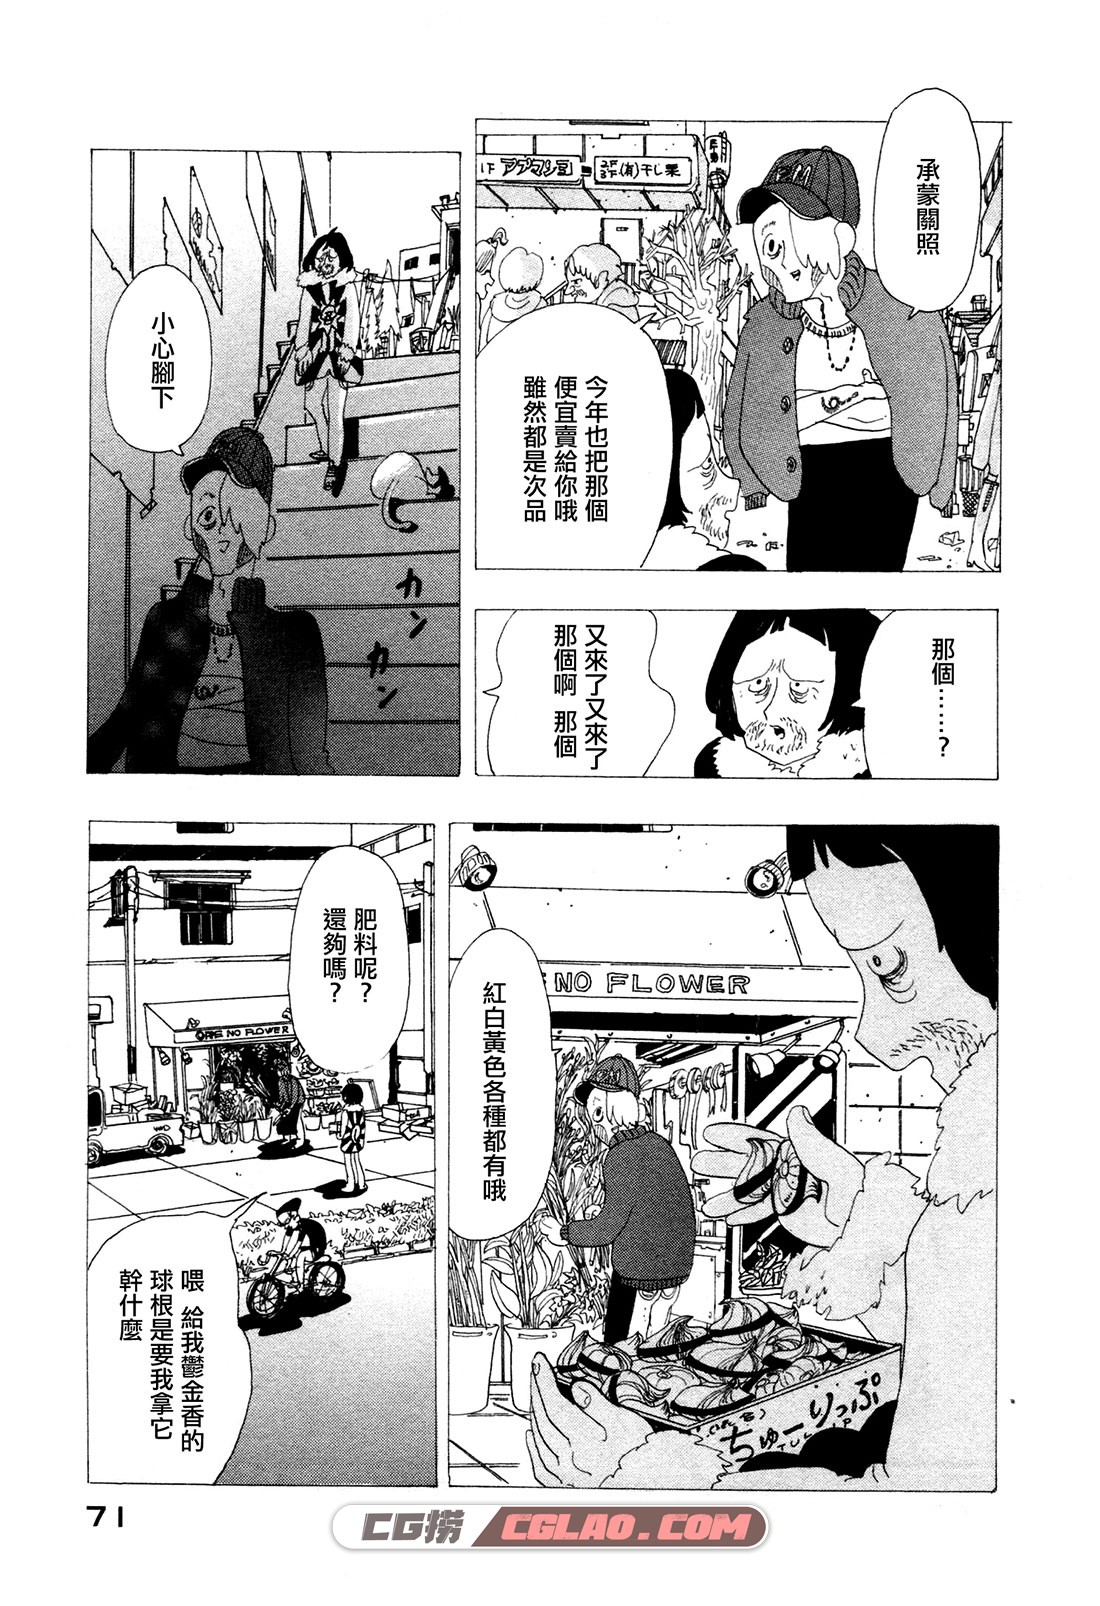 我很正常 宫崎夏次系 全一册 百度云网盘日本漫画下载 - CG捞